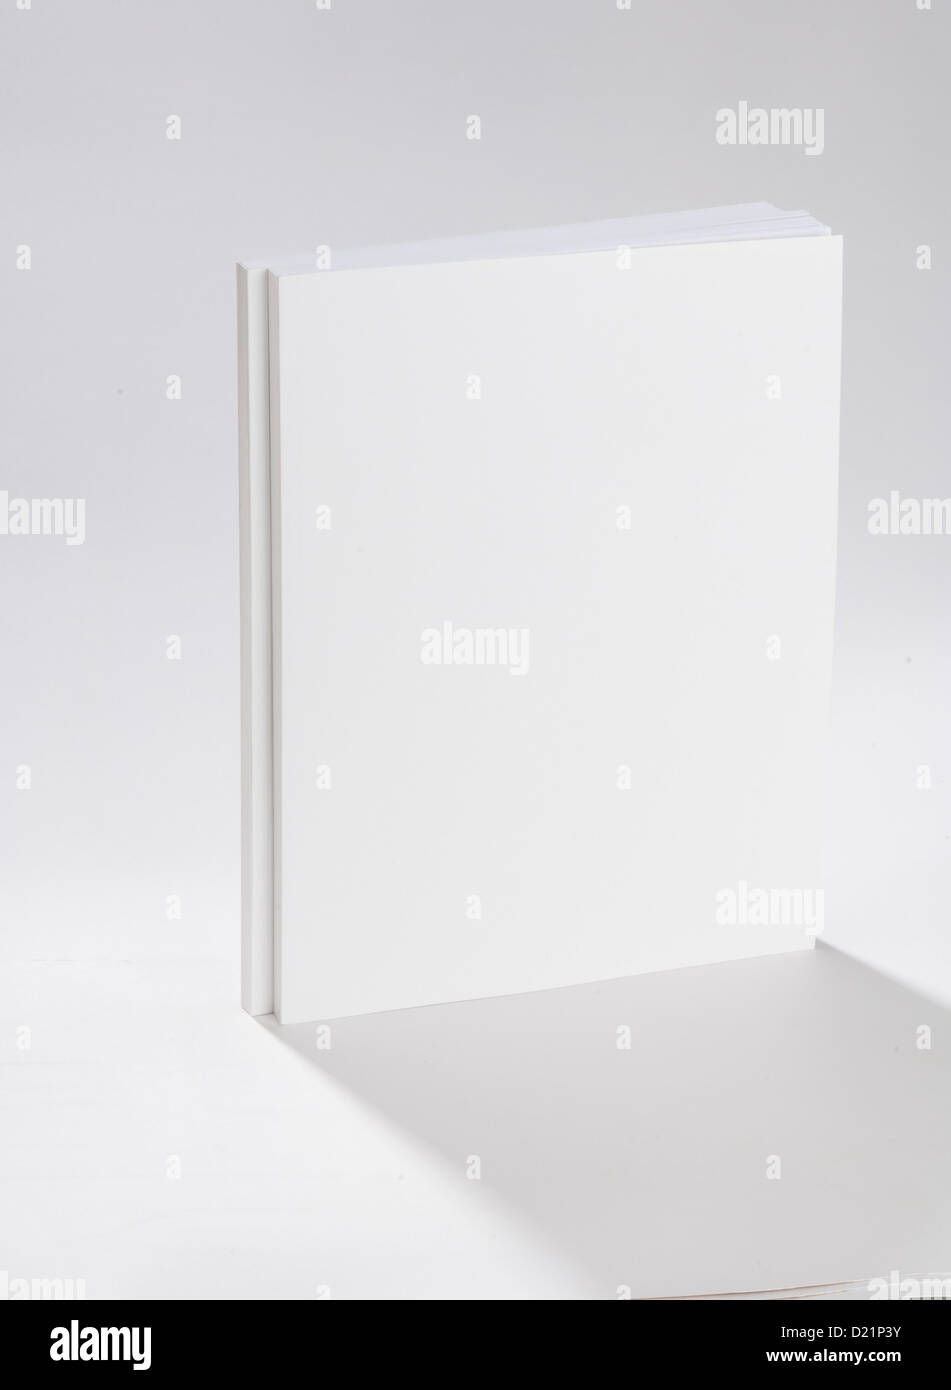 Two blank books on white ground Stock Photo